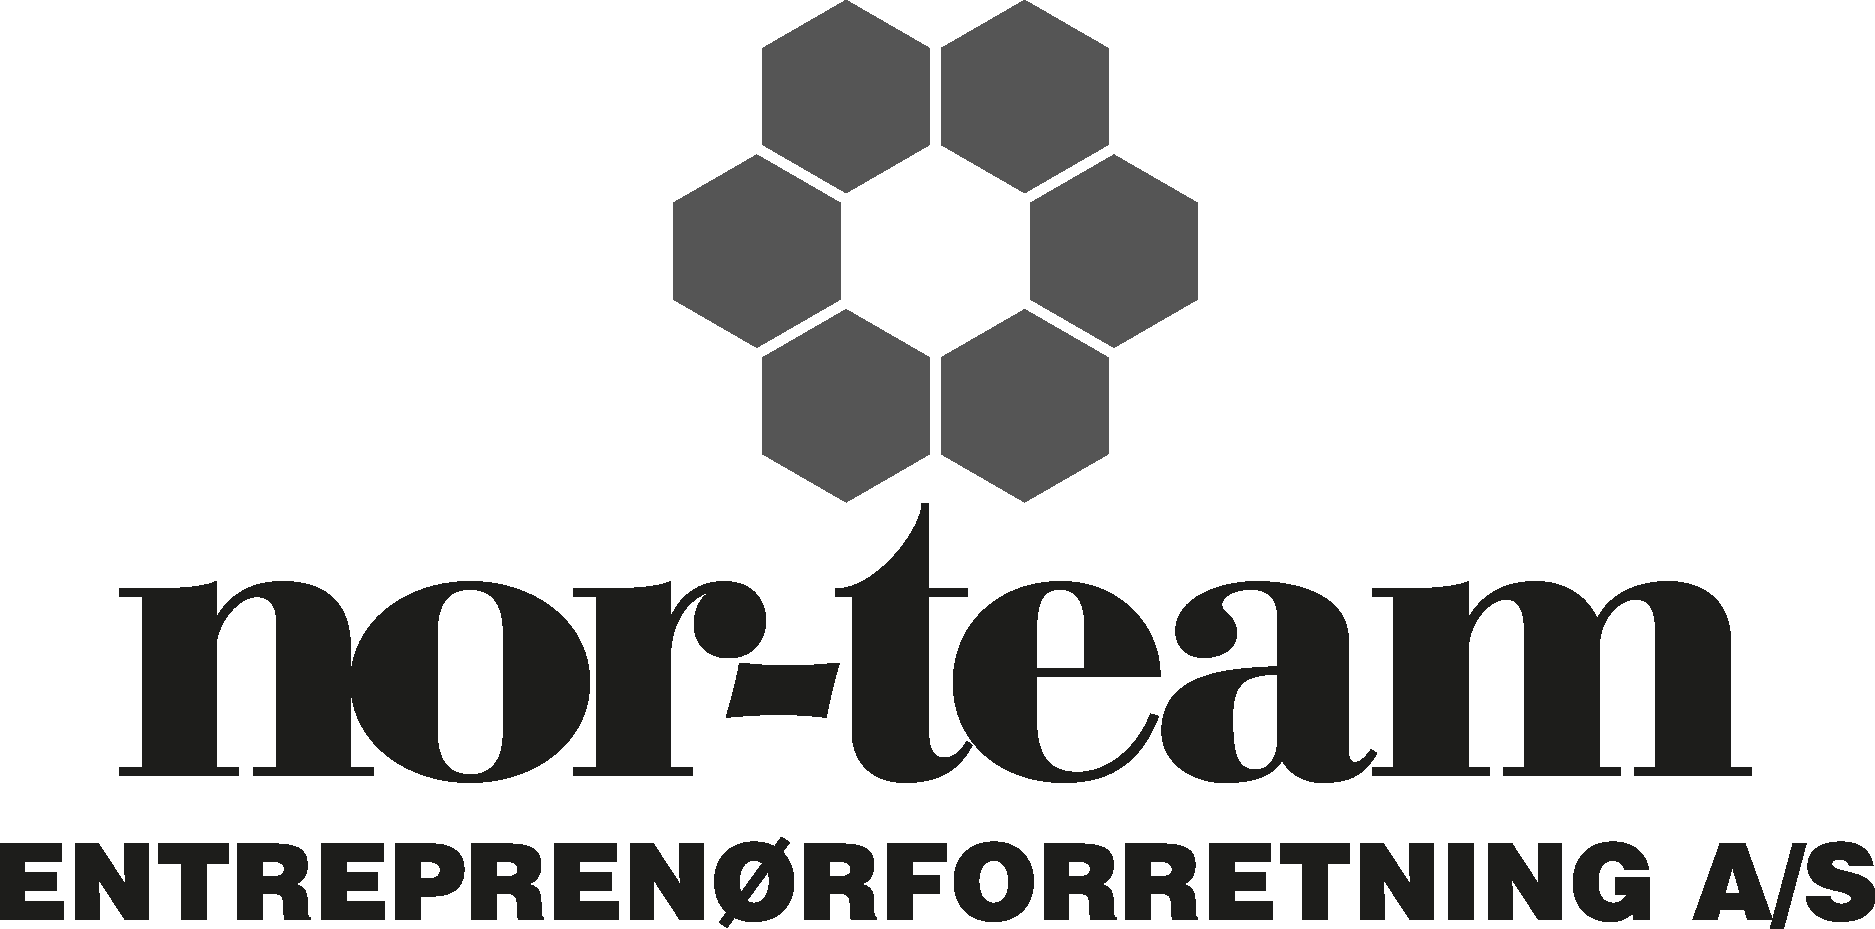 Nor team enterprenoforreting Logo Vector